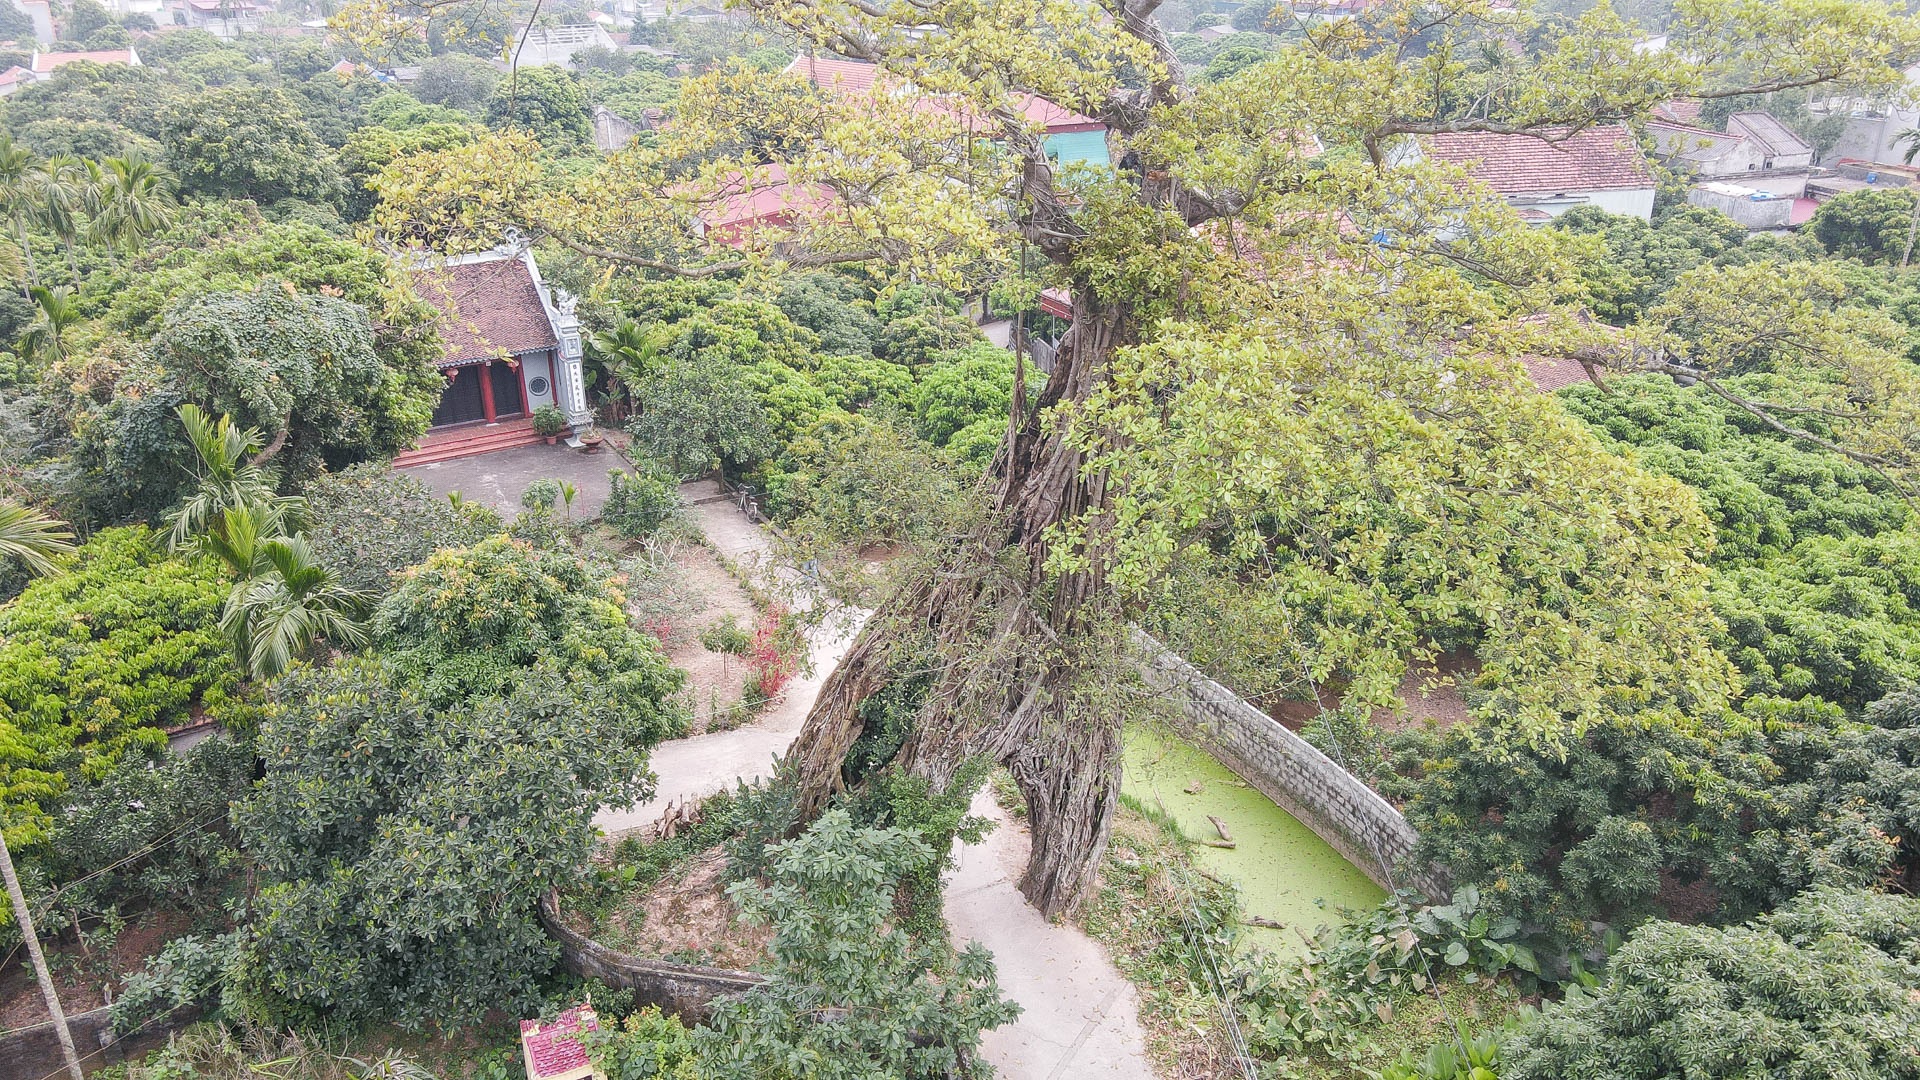 Cây đa 500 tuổi có bộ rễ khủng tạo thành cổng làng 'độc' nhất ở Hưng Yên - Ảnh 6.